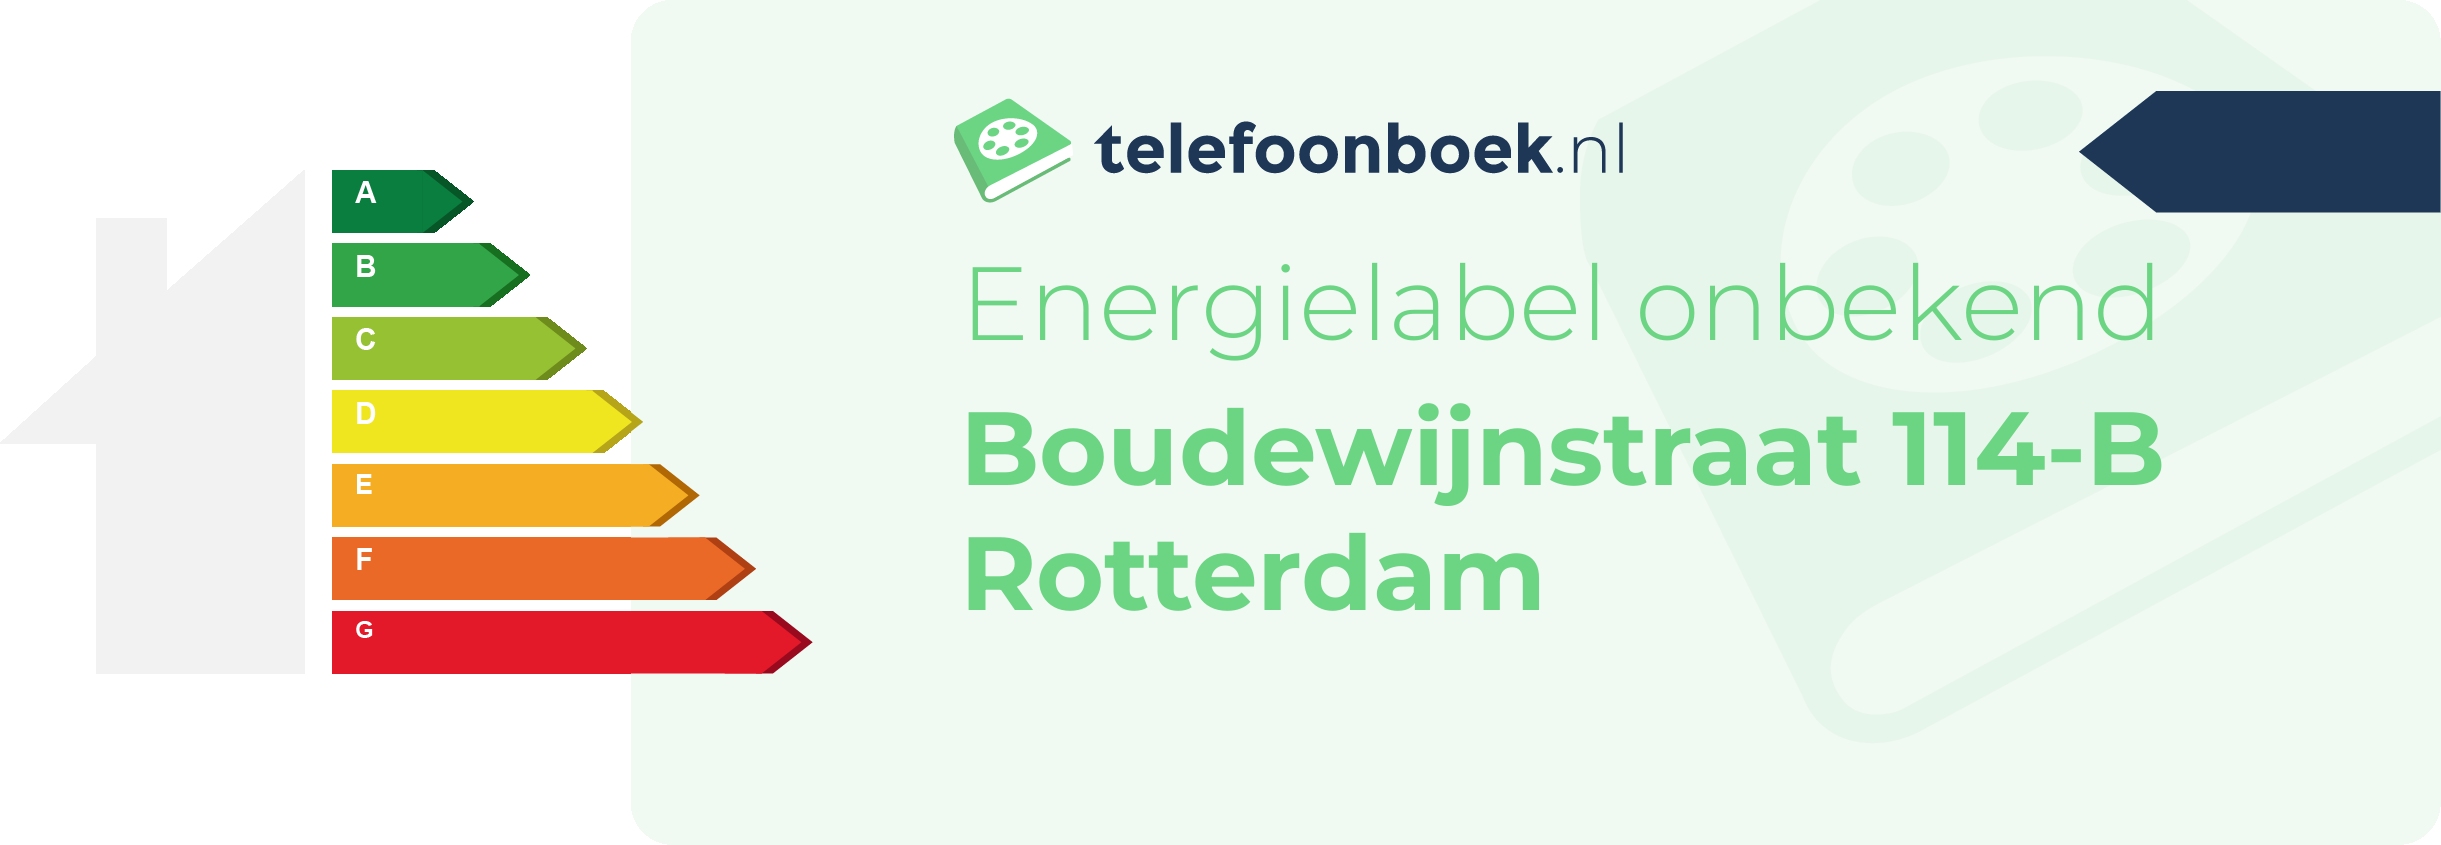 Energielabel Boudewijnstraat 114-B Rotterdam